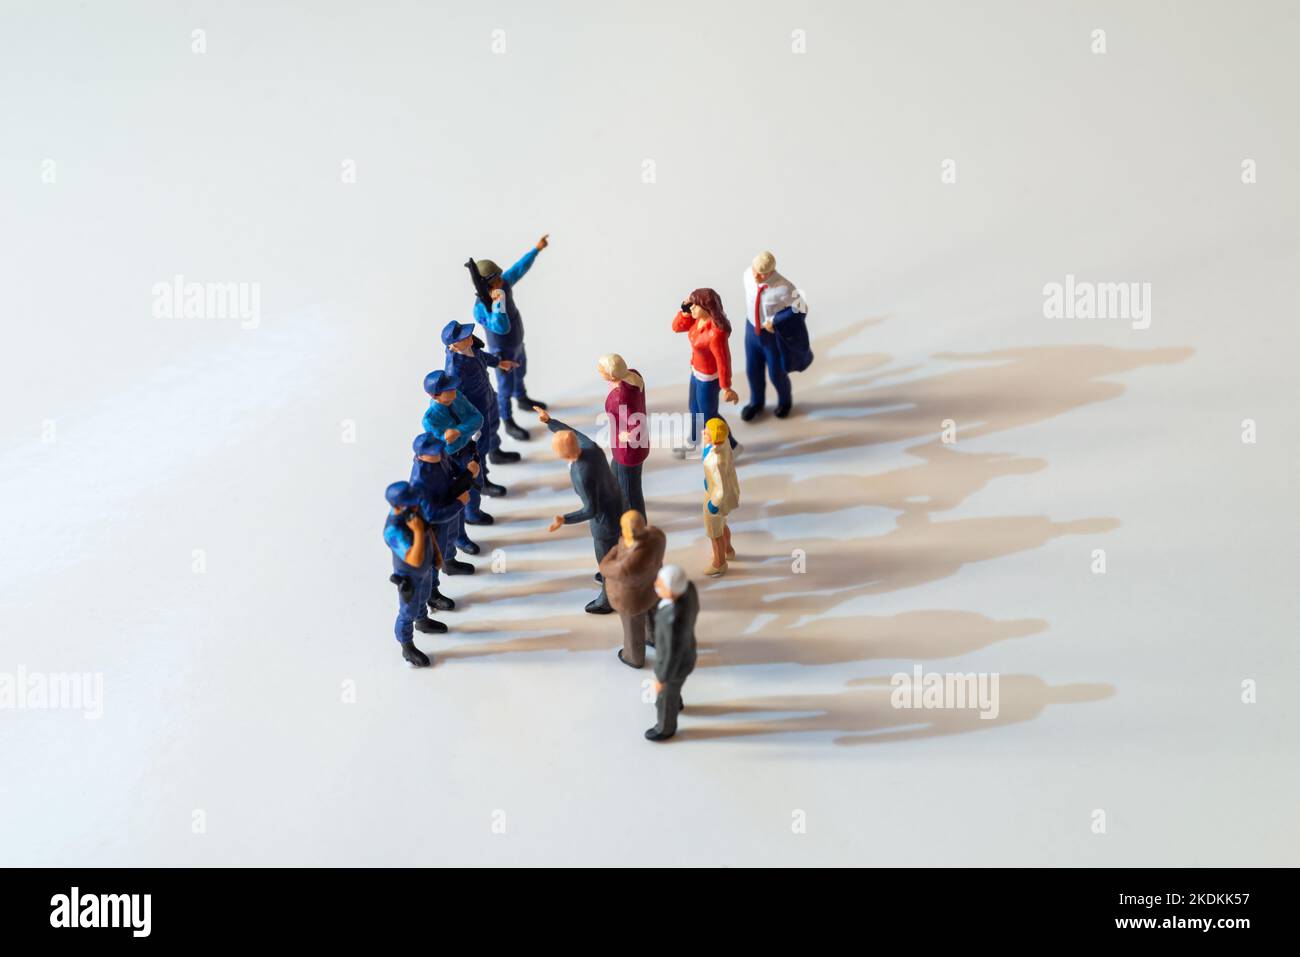 EDITORIALE ILLUSTRATIVO - ordini di controllo del movimento (mco) Lockdown Concept images - personaggi giocattolo in miniatura di poliziotti o agenti di pattuglia di confine che arrestano pu Foto Stock